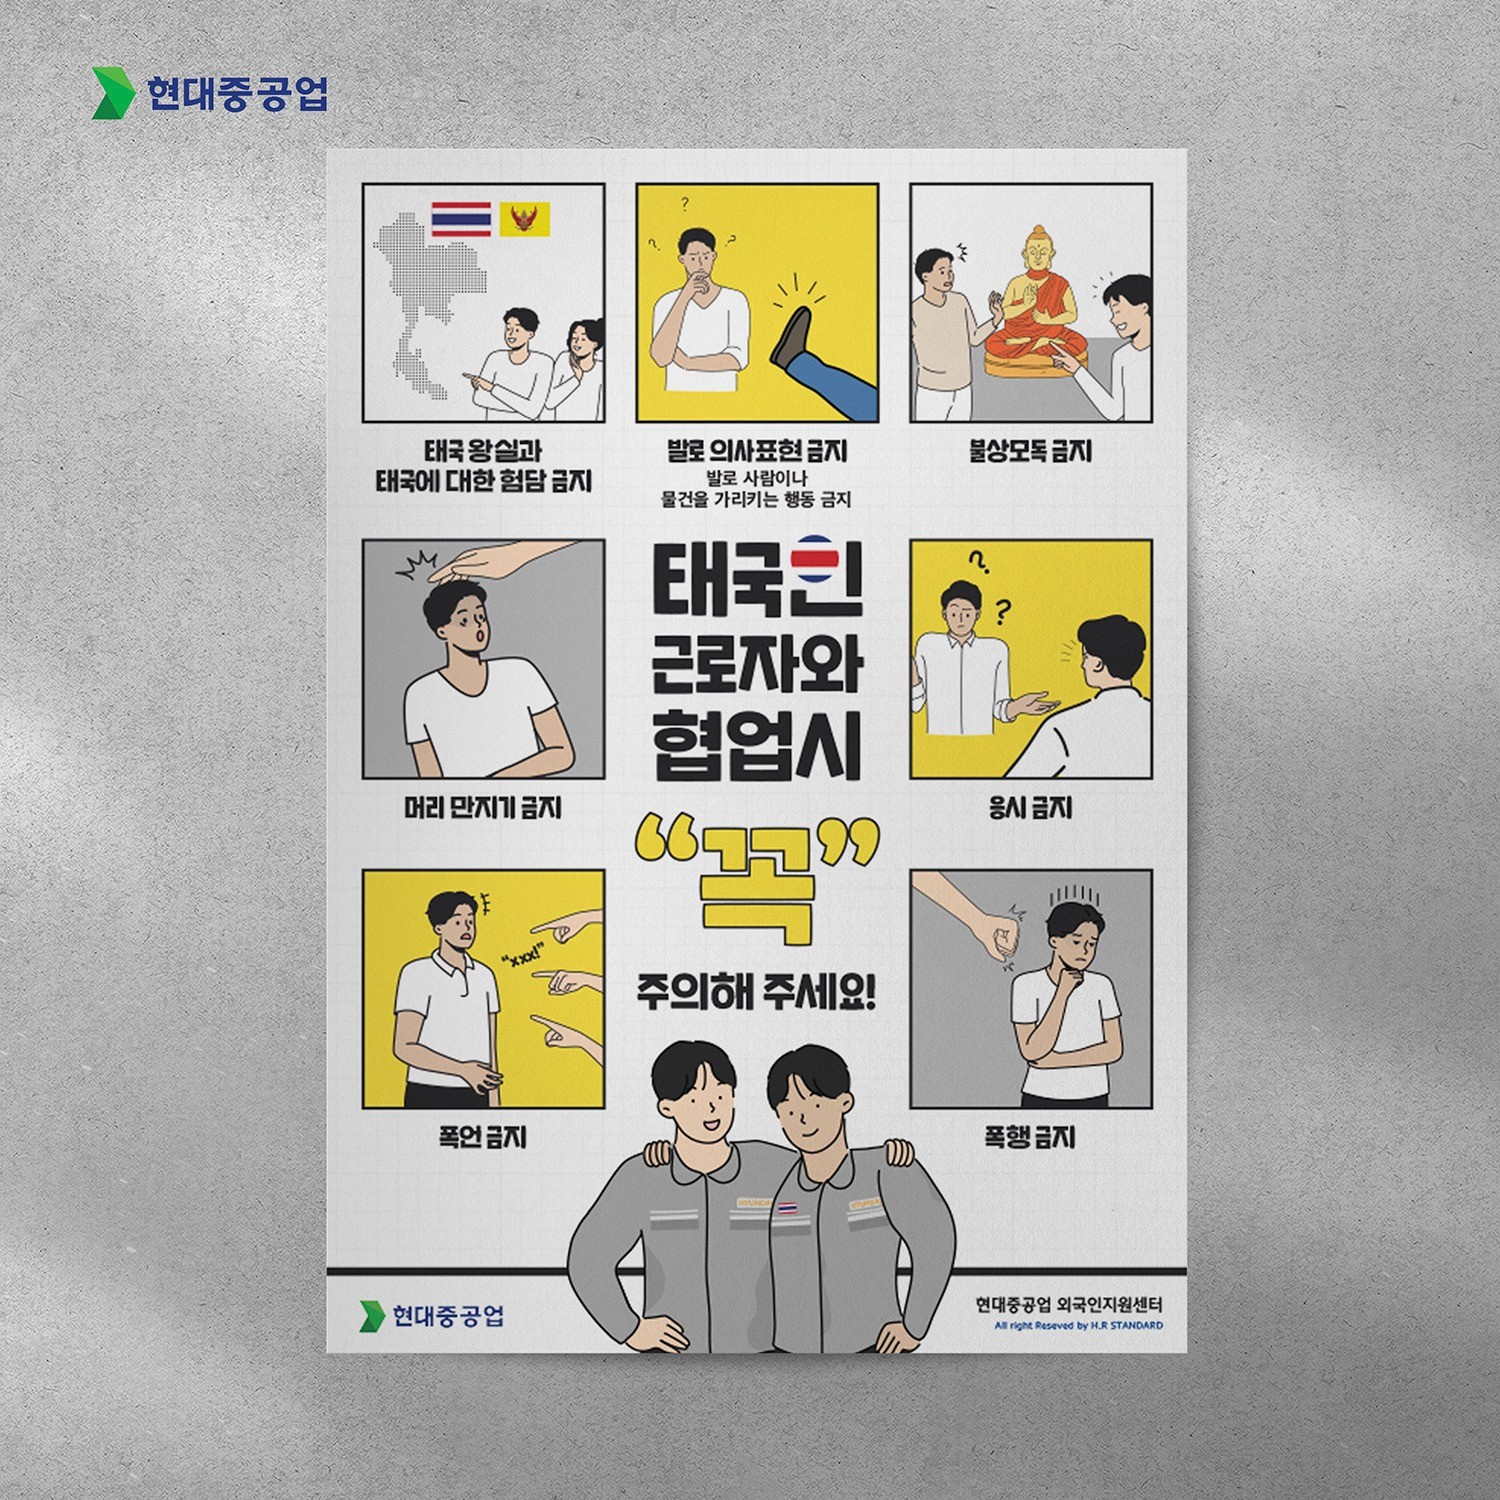 포트폴리오-현대중공업 외국인 노동자 차별금지 캠페인 안내 홍보 포스터 제작 인쇄